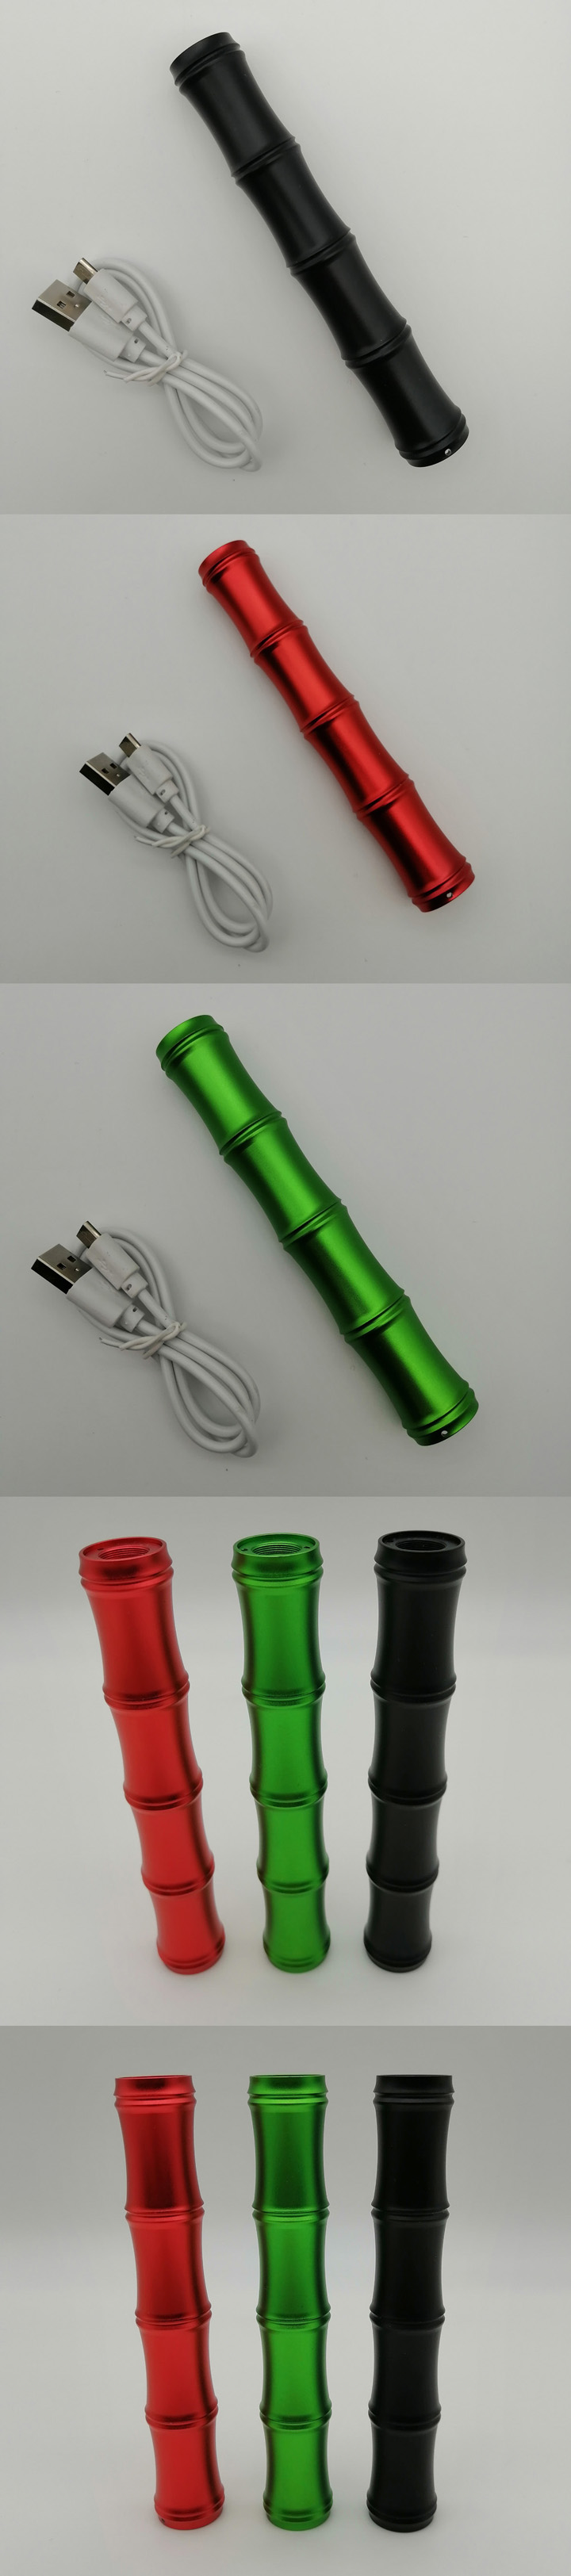 puntero láser verde USB recargable